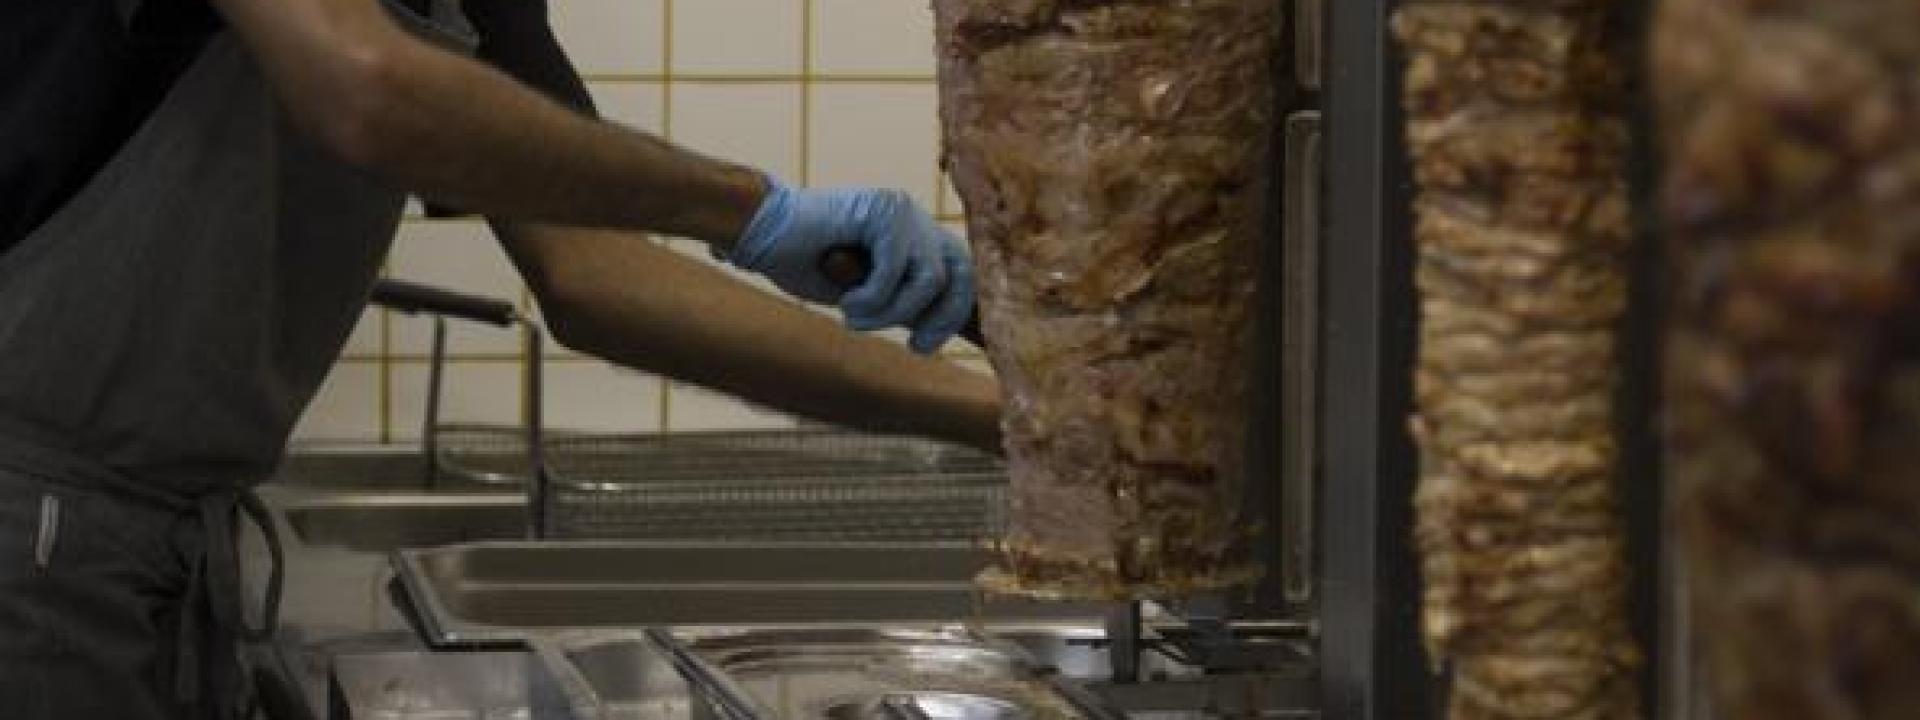 Marche - Sporcizia, mancanza di autorizzazioni e insegne irregolari: multe in tre kebab